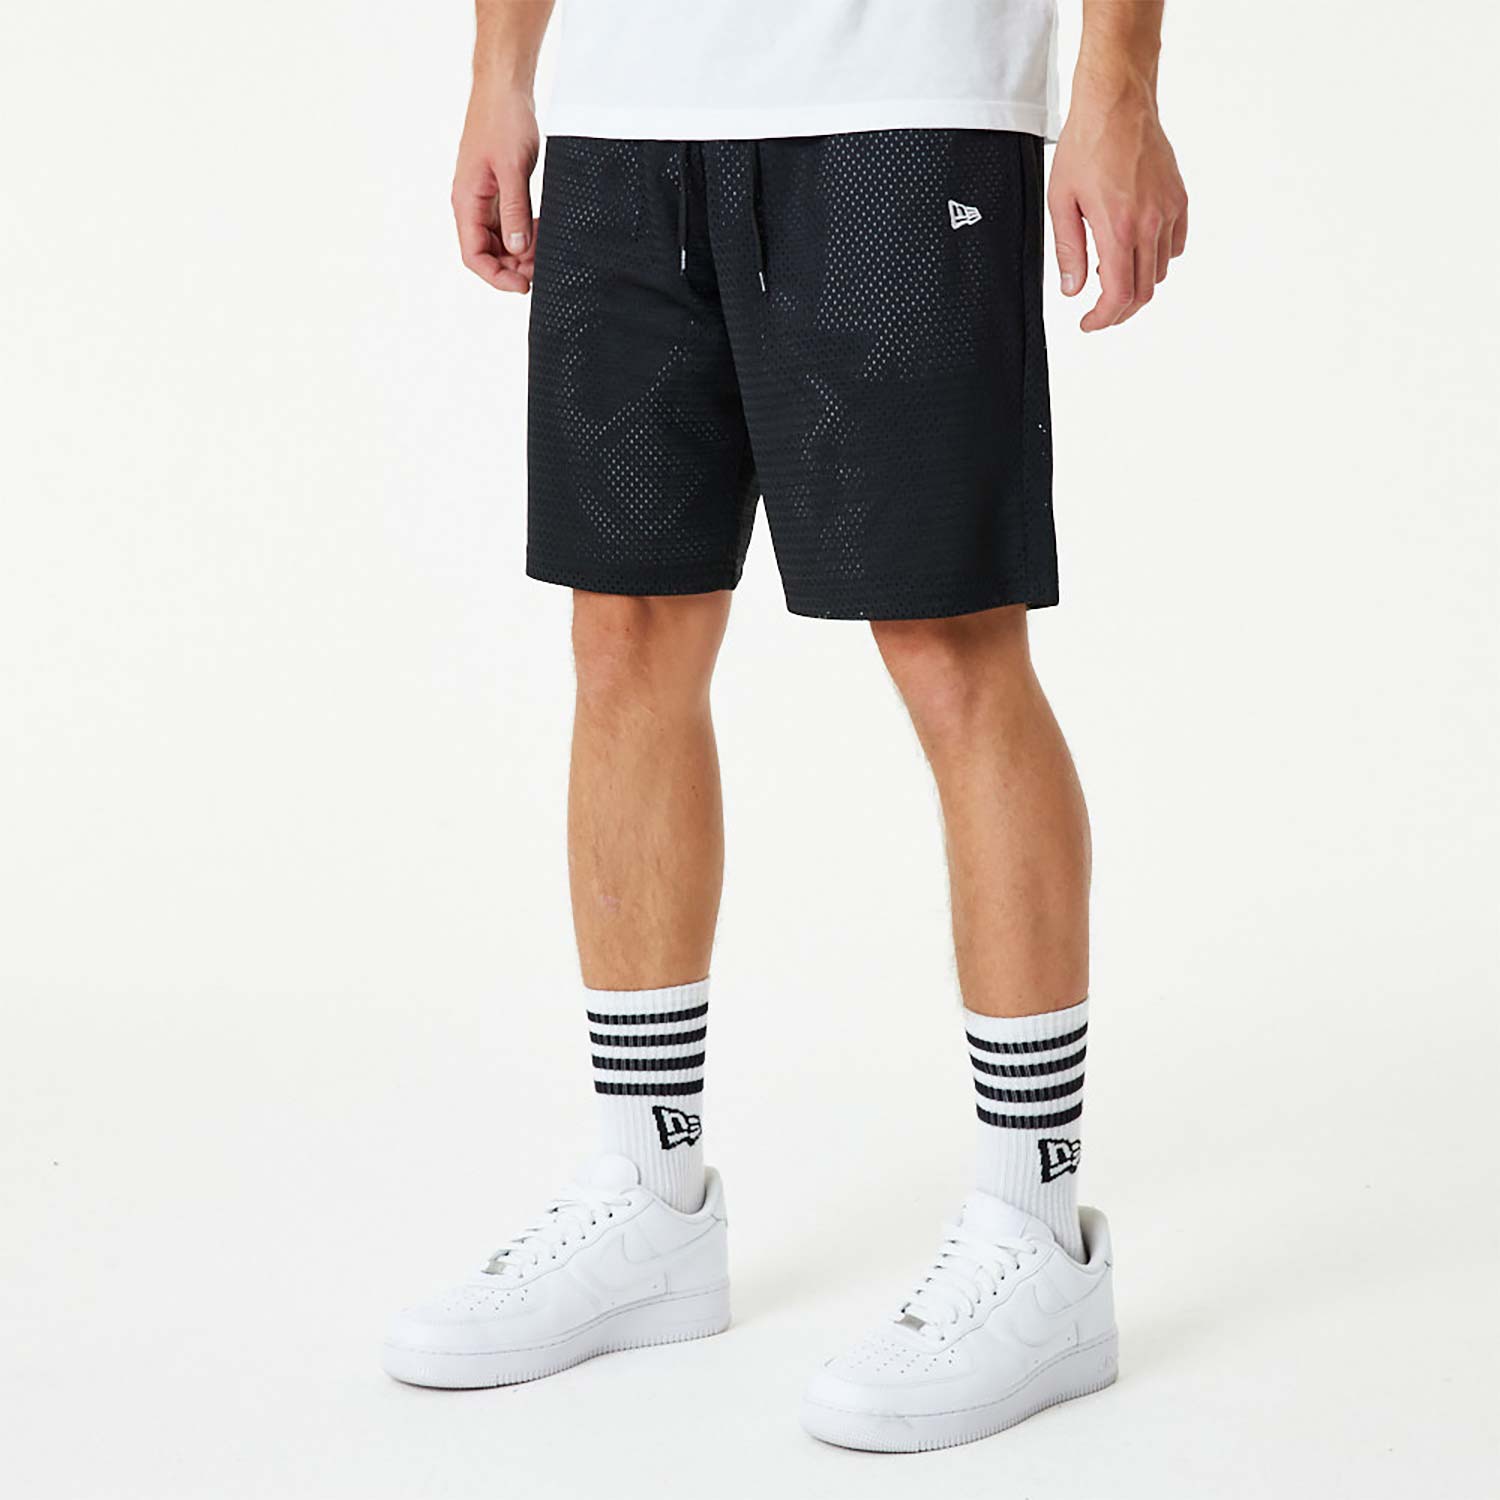 New Era Black And White Mesh Shorts